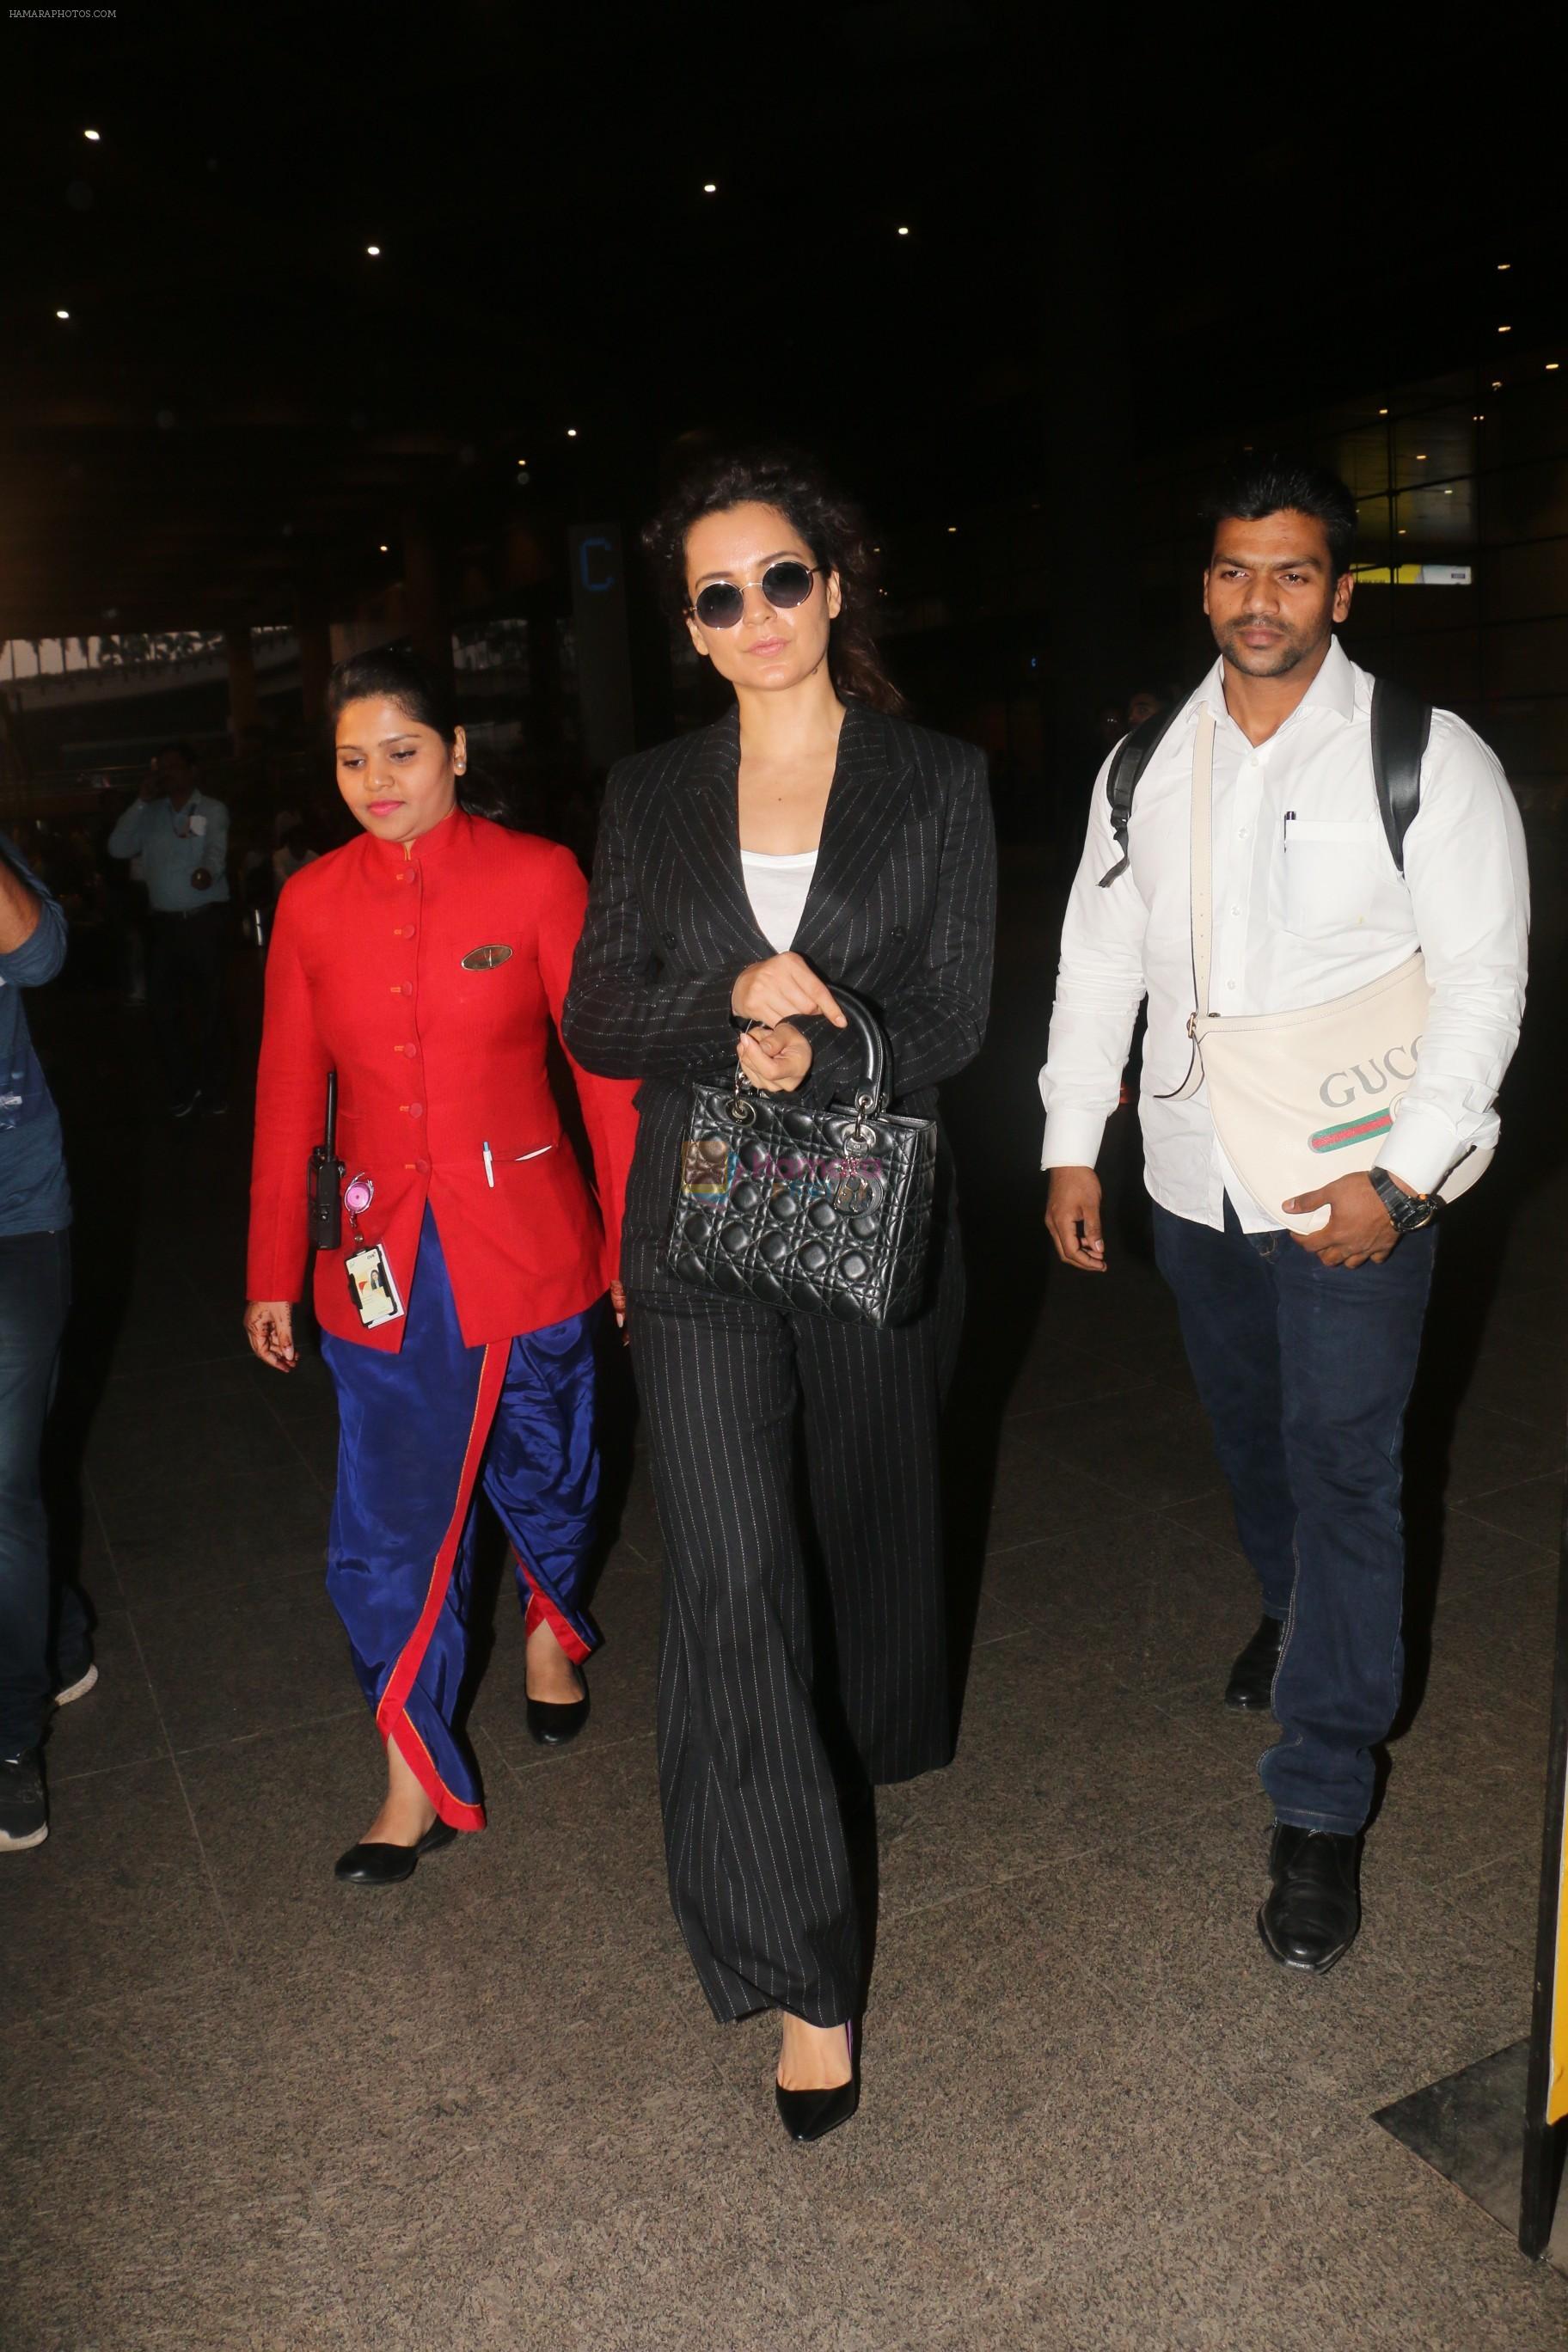 Kangana Ranaut spotted at airport in mumbai on 2nd Jan 2019